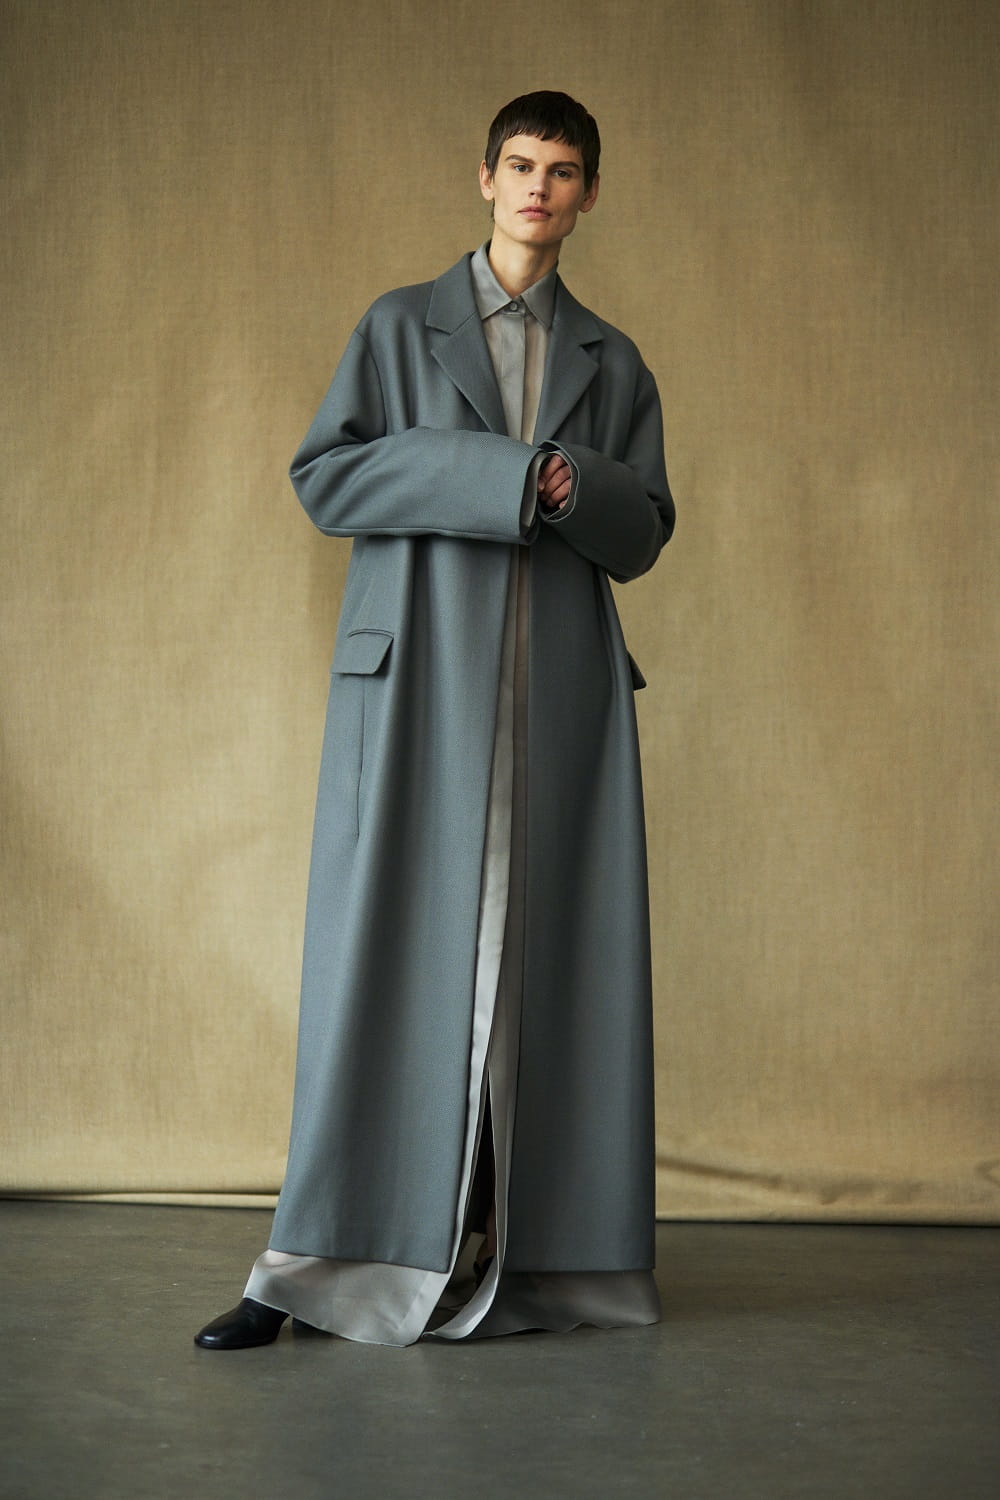 Saskia de Brauw for The Row Spring Fashion Campaign